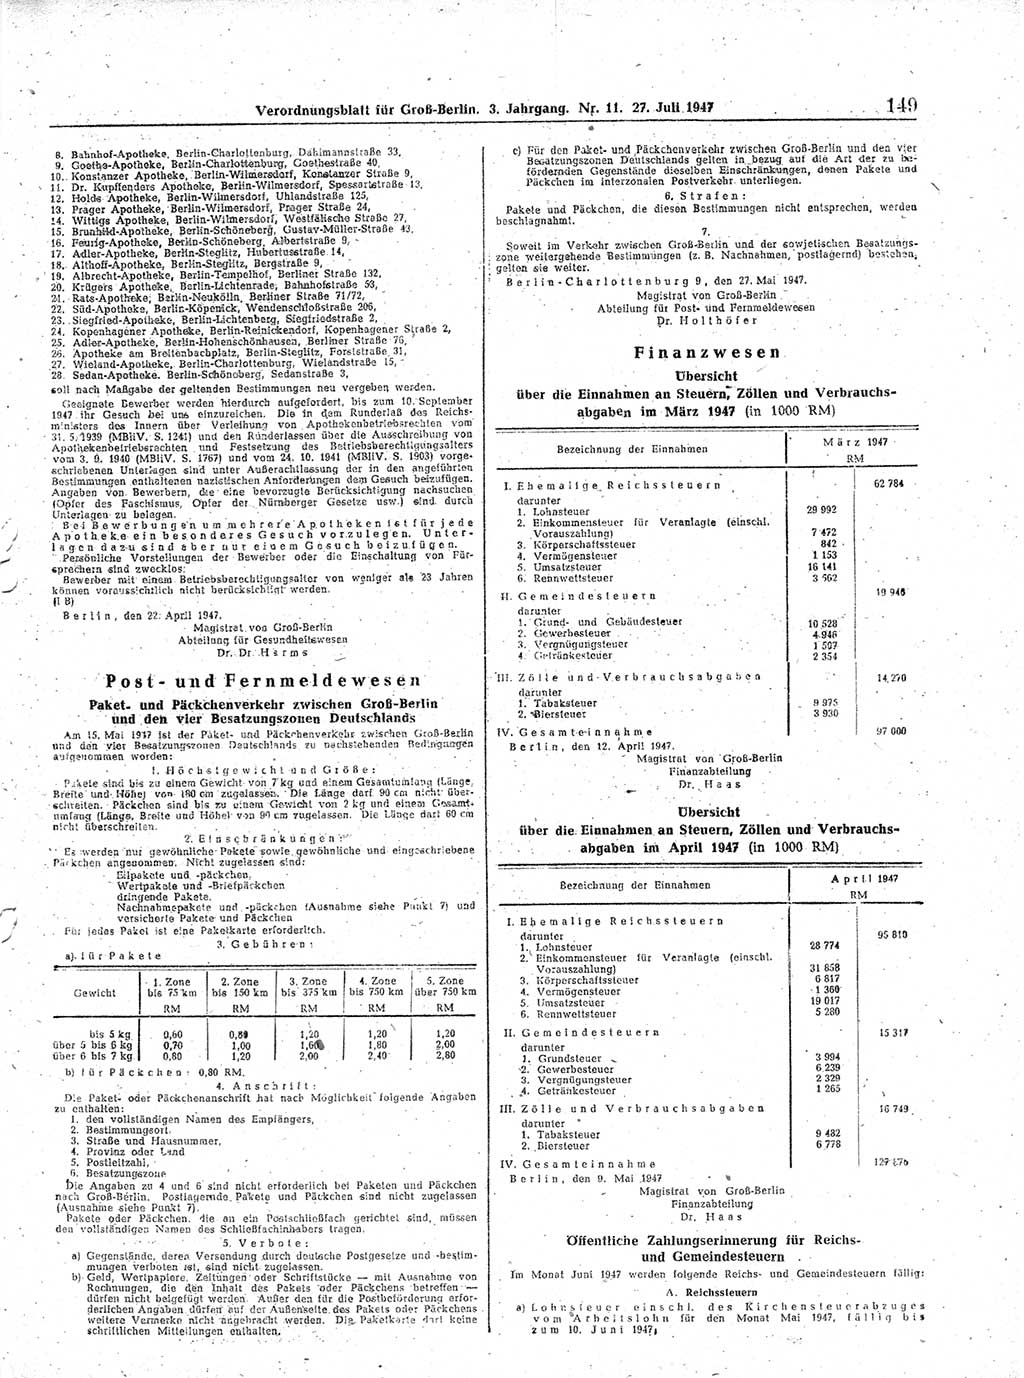 Verordnungsblatt (VOBl.) für Groß-Berlin 1947, Seite 149 (VOBl. Bln. 1947, S. 149)